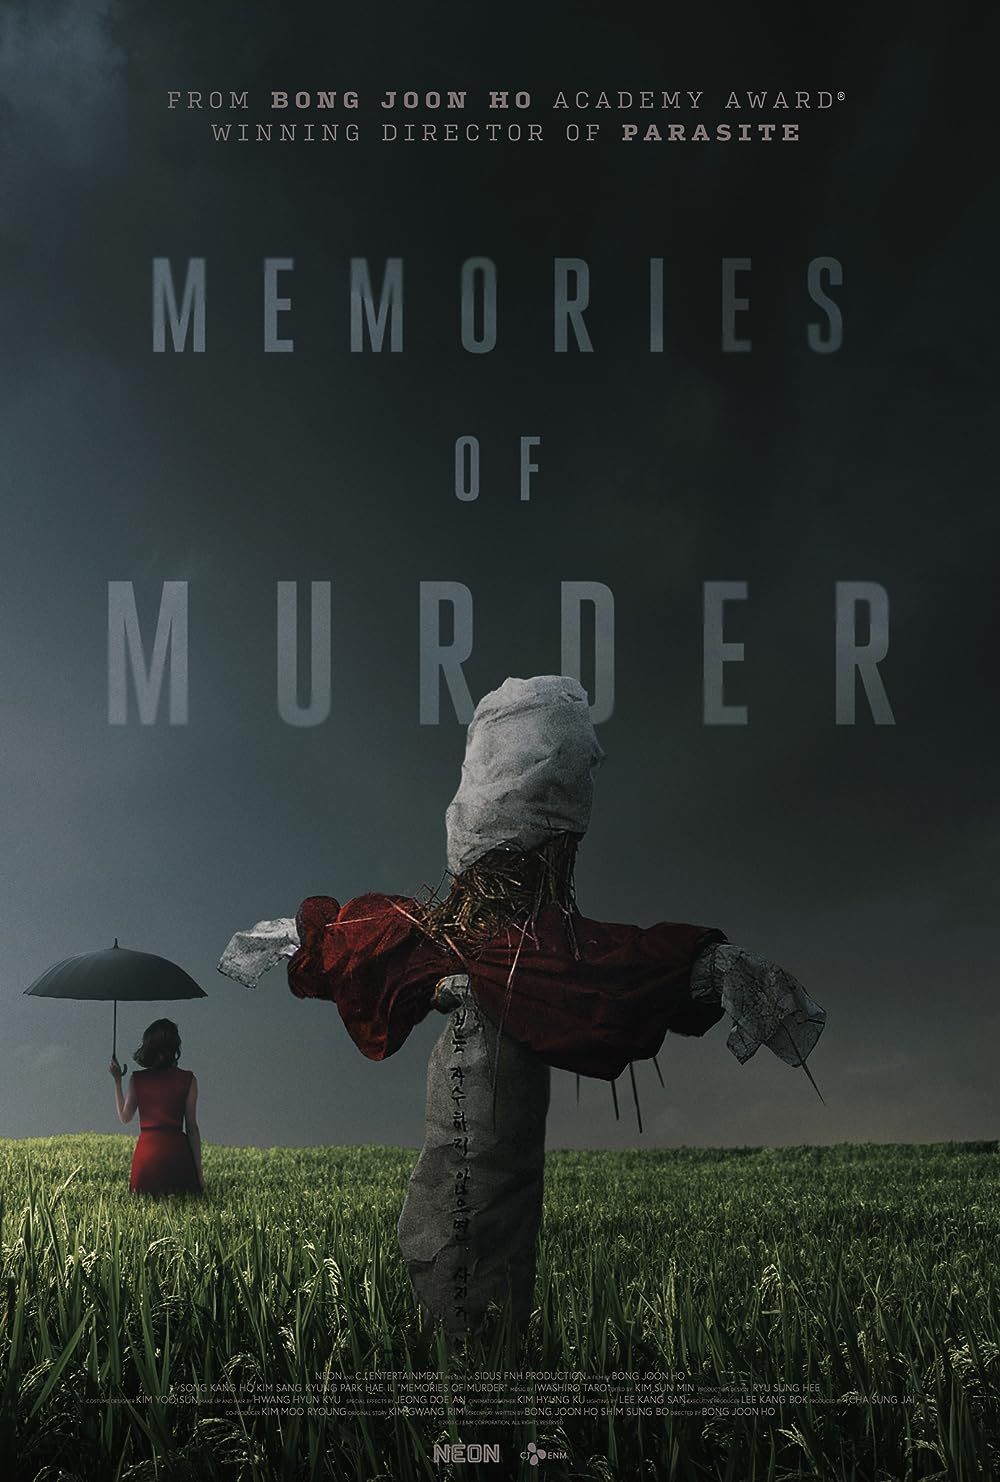 Um Espantalho e uma mulher com um guarda-chuva em um campo no pôster Memórias de Assassinato